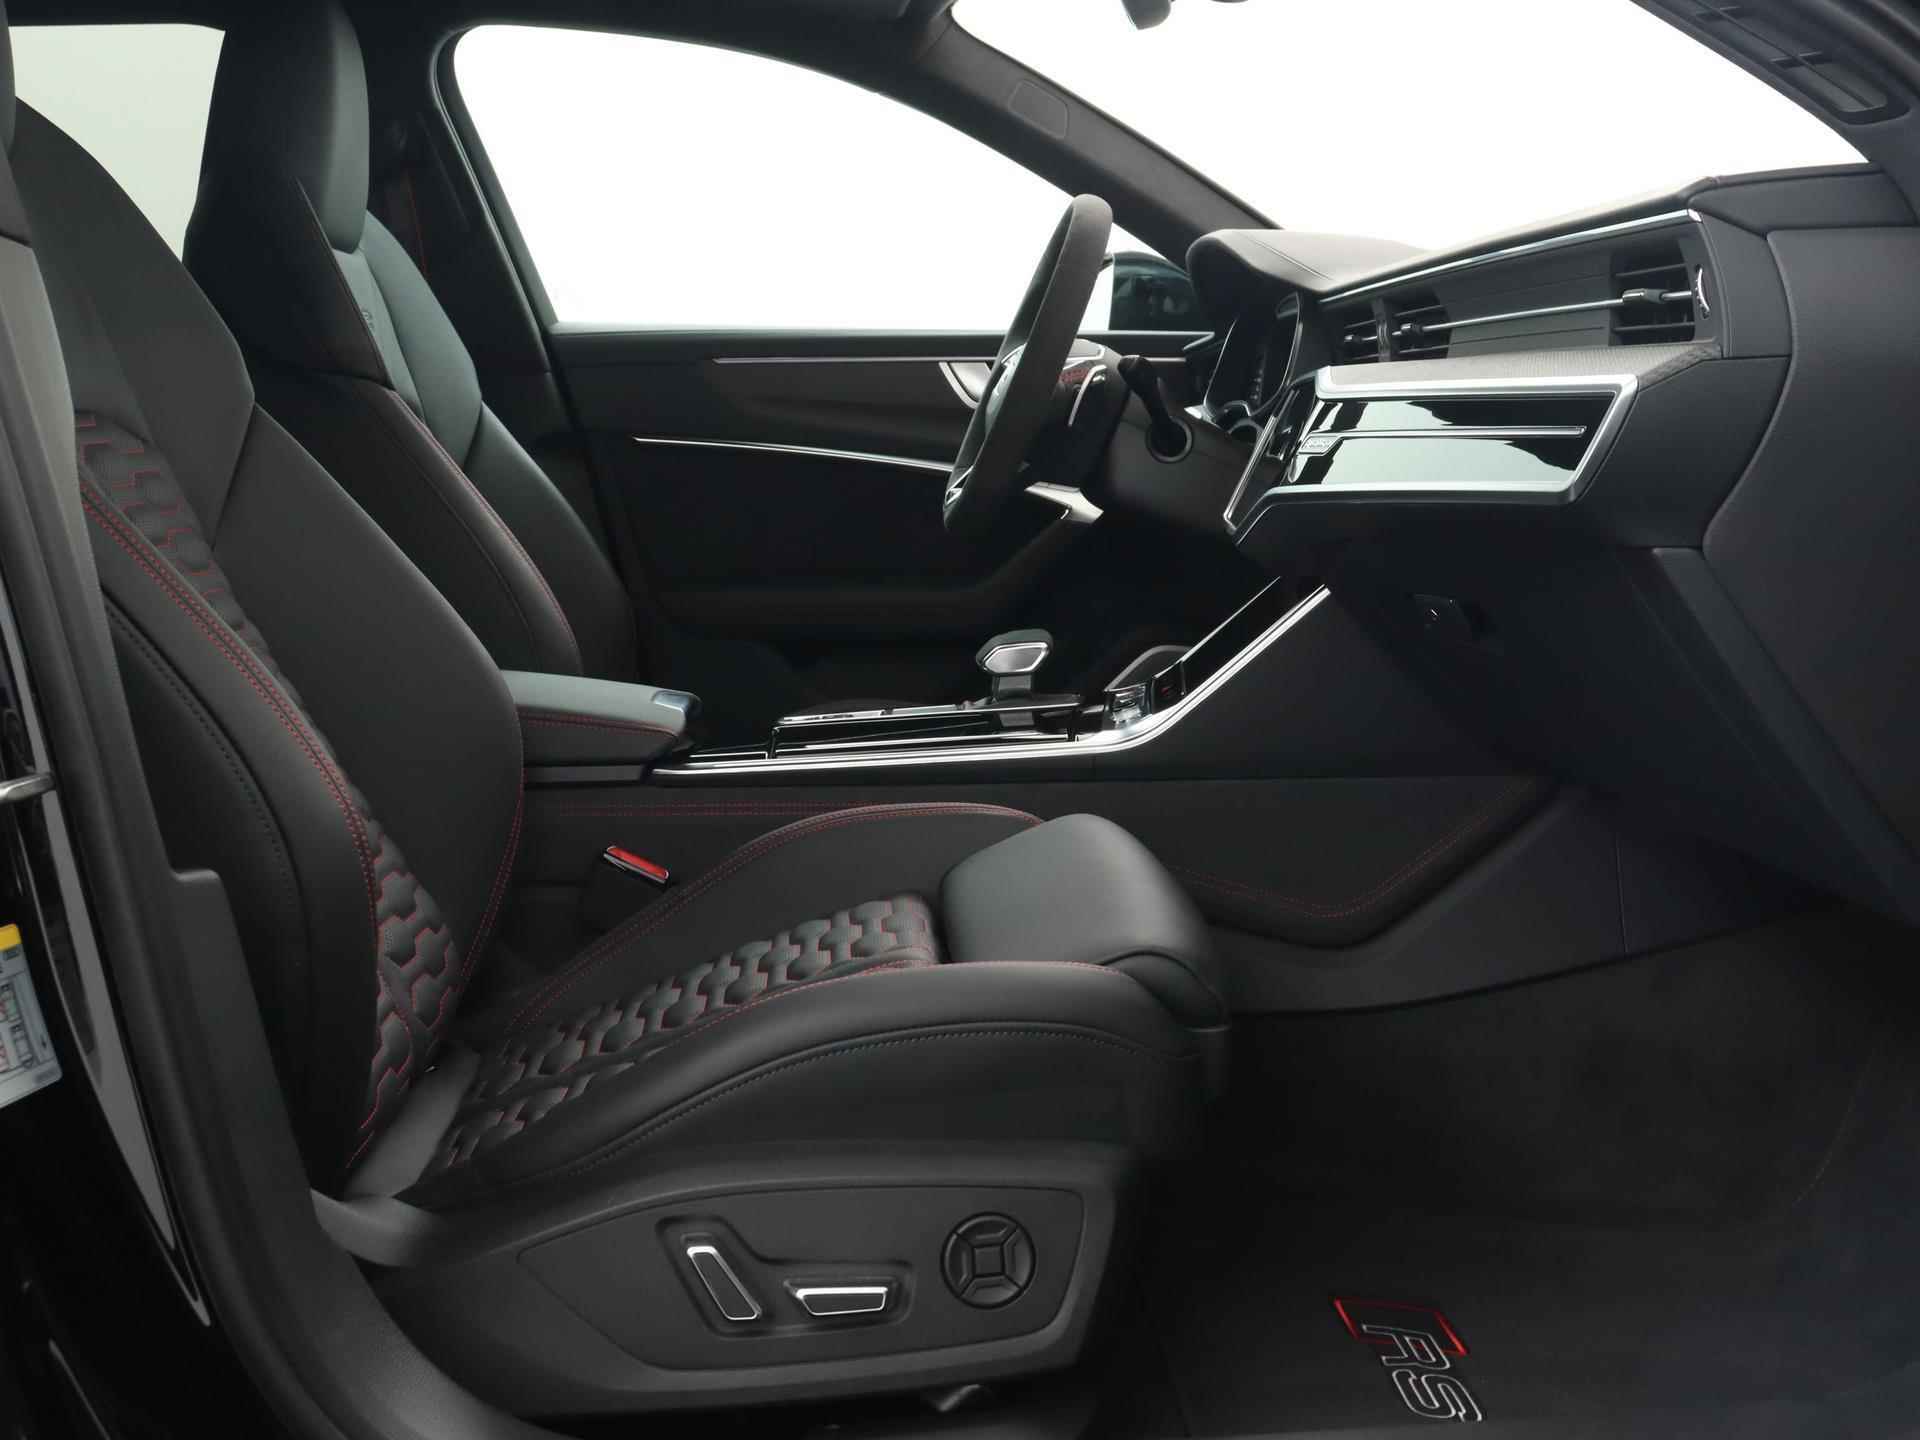 Audi RS6 TFSI quattro 600 PK | Head-up display | Bang & Olufsen Soundsystem | 22 inch lm velgen | RS Dynamic Pakket Plus | RS Design pakket Rood |Optiekpakket Zwart Plus | Panorama dak | RS Sportuitlaat | Keramische remschijven Rood | RS Sportonderstel Plus | Servosluiting deuren | Nu € 36.129,- ACTIEKORTING! | DIRECT LEVERBAAR! | NIEUWE AUTO! | - 10/35